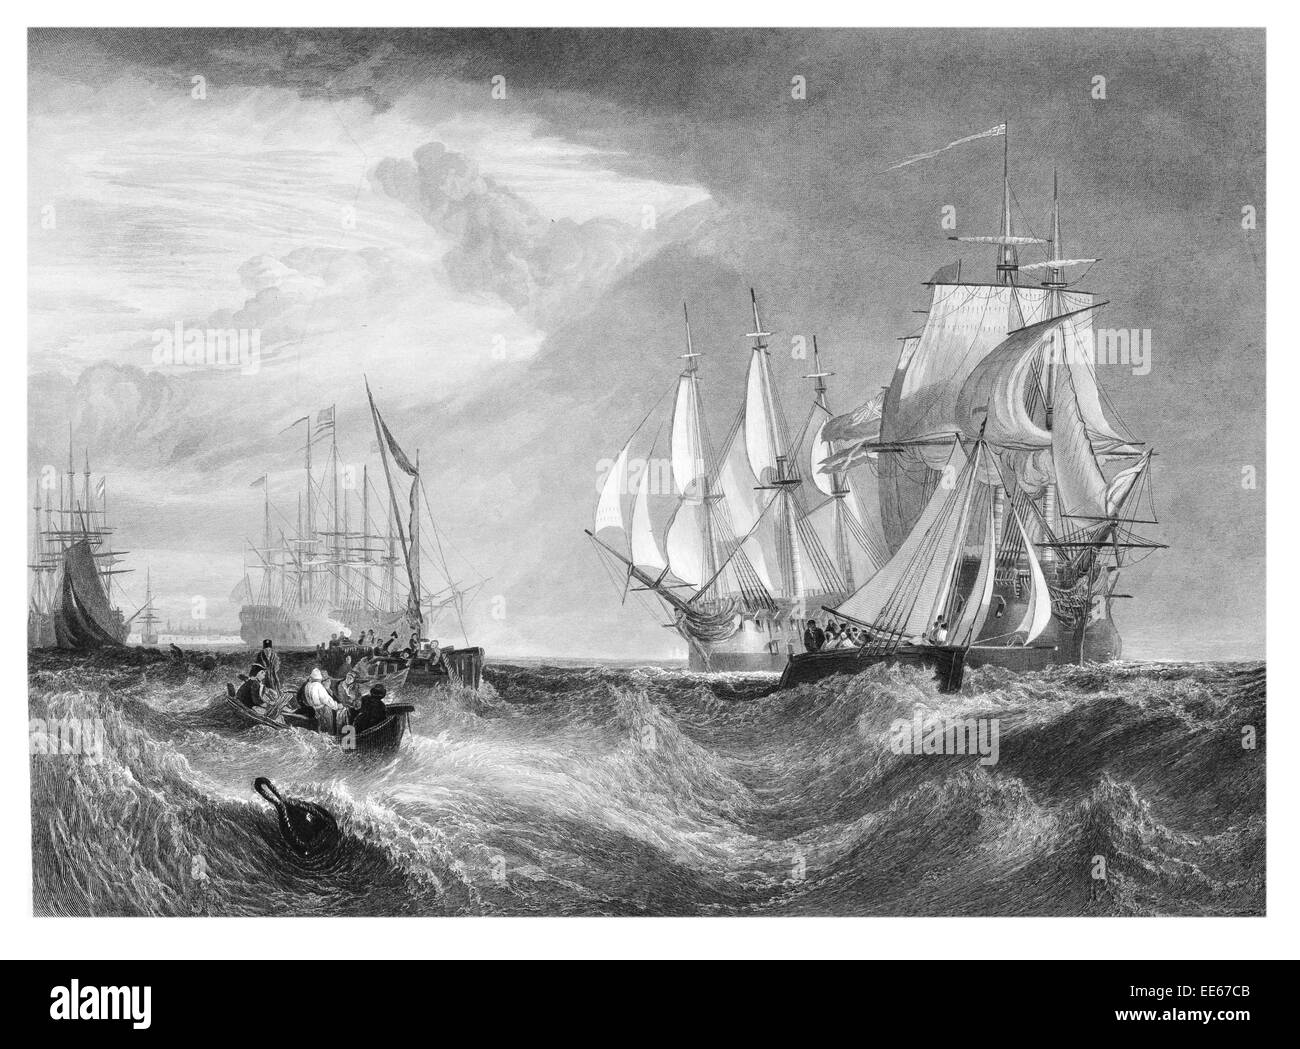 Spithead Joseph Mallord William Turner zwei erfasst dänische Schiffe betreten Portsmouth Harbour 1807 – 9 Schlacht Galeone Kriegsschiff Stockfoto